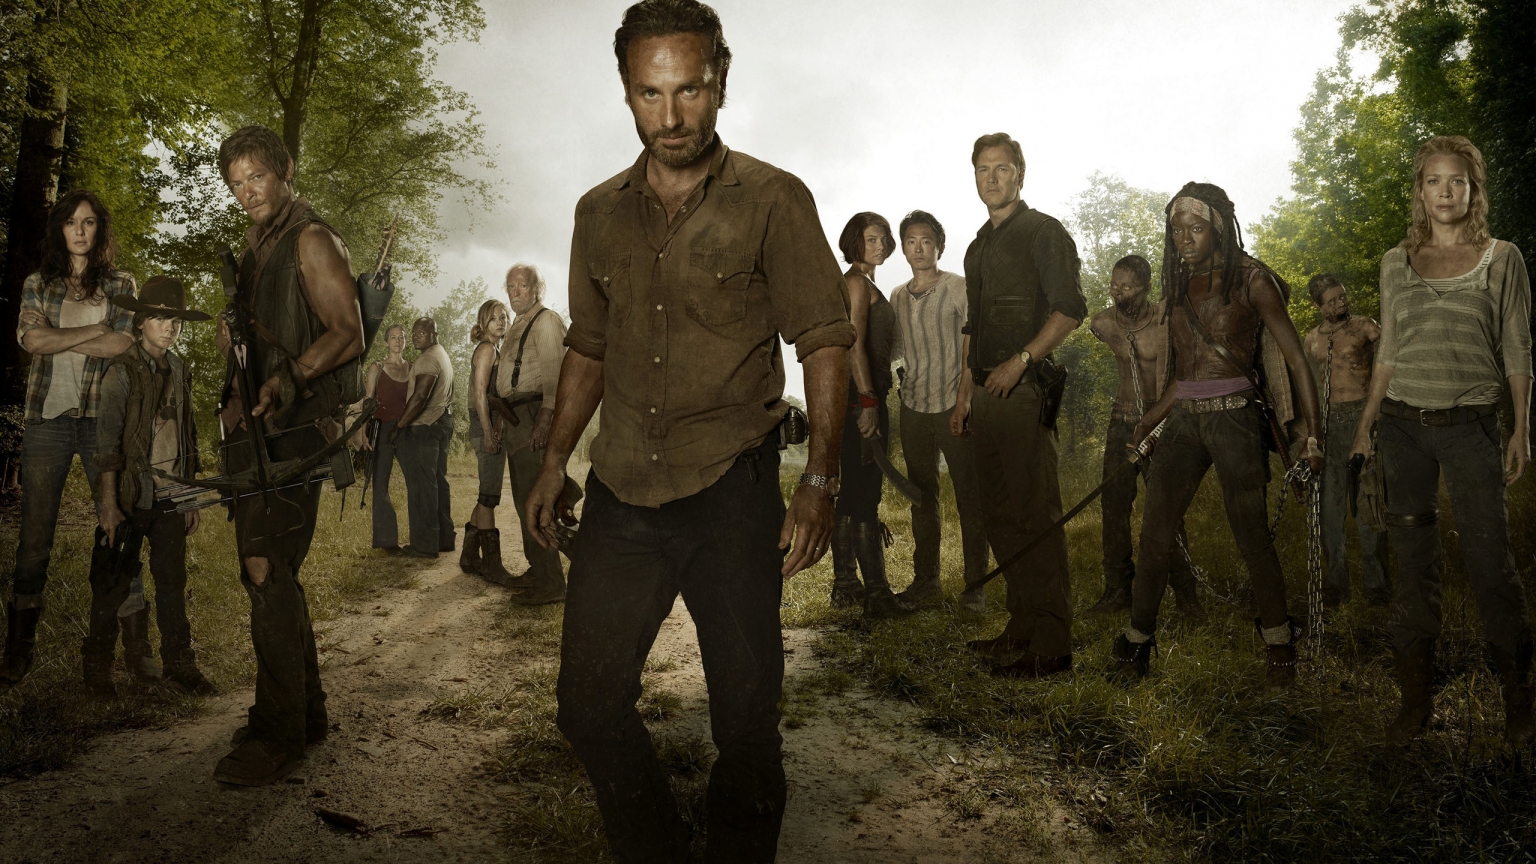 The Walking Dead Full Cast for 1536 x 864 HDTV resolution